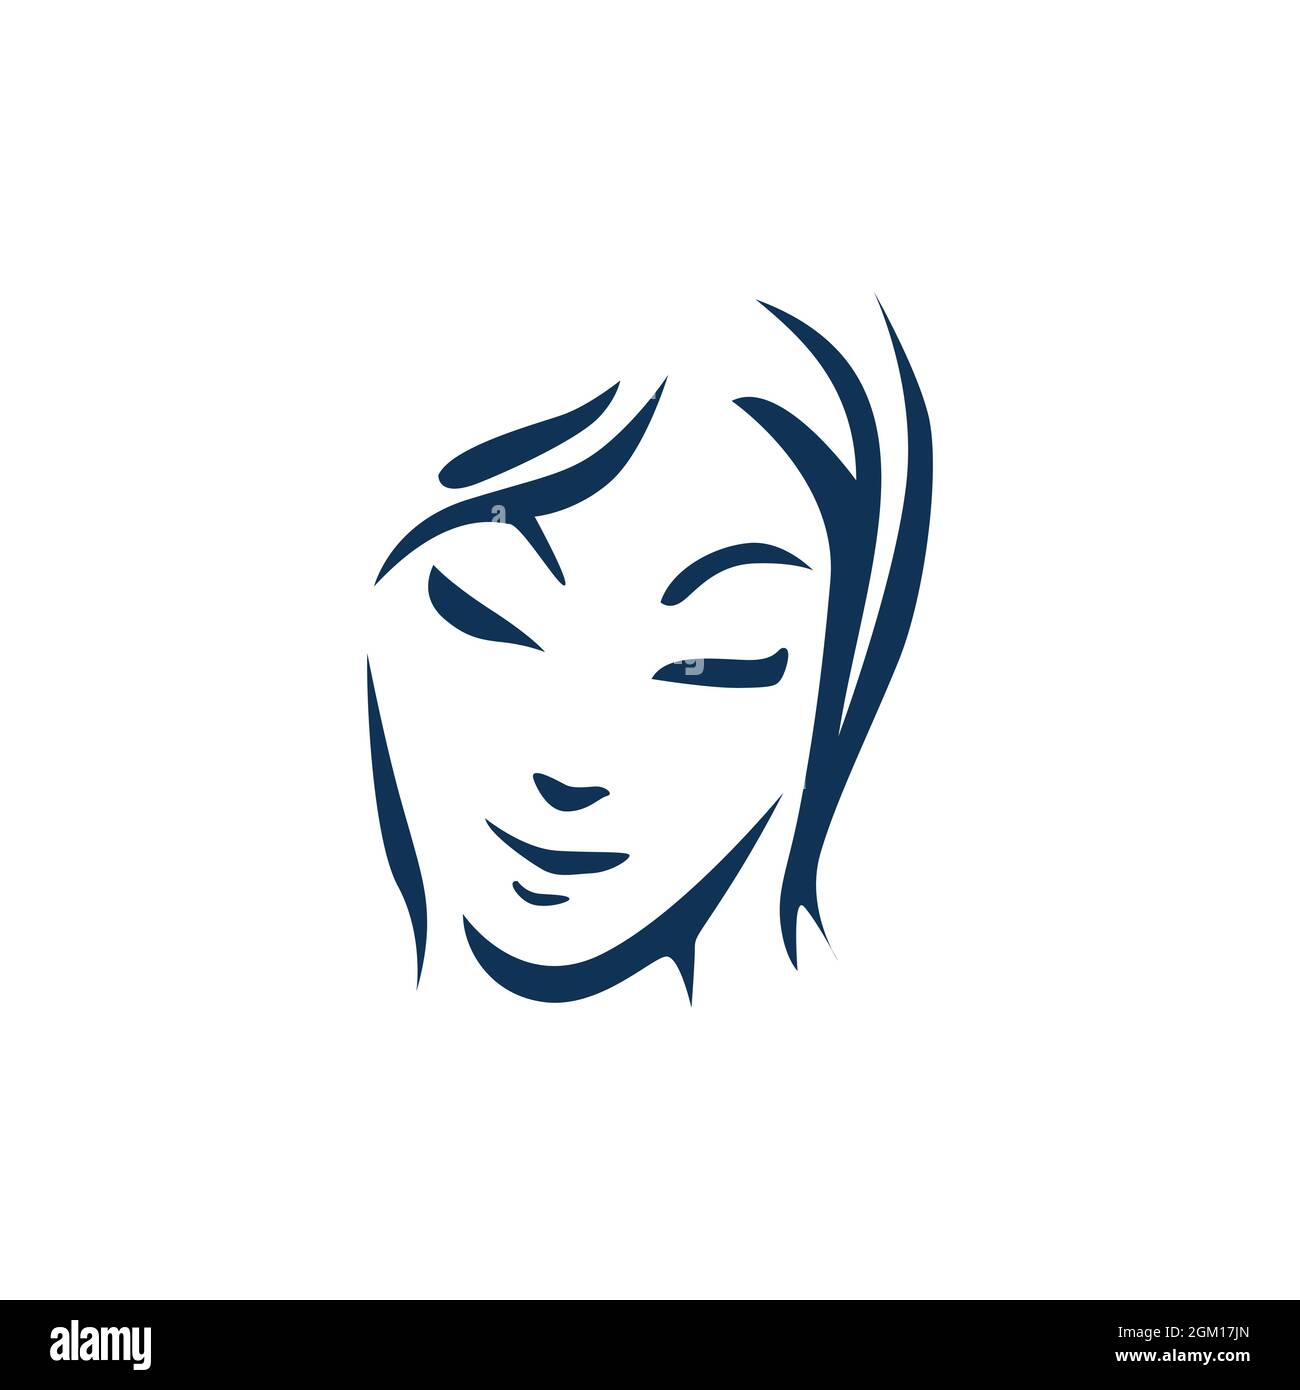 abstract woman feminine face logo icon flat concept vector graphic design Stock Vector